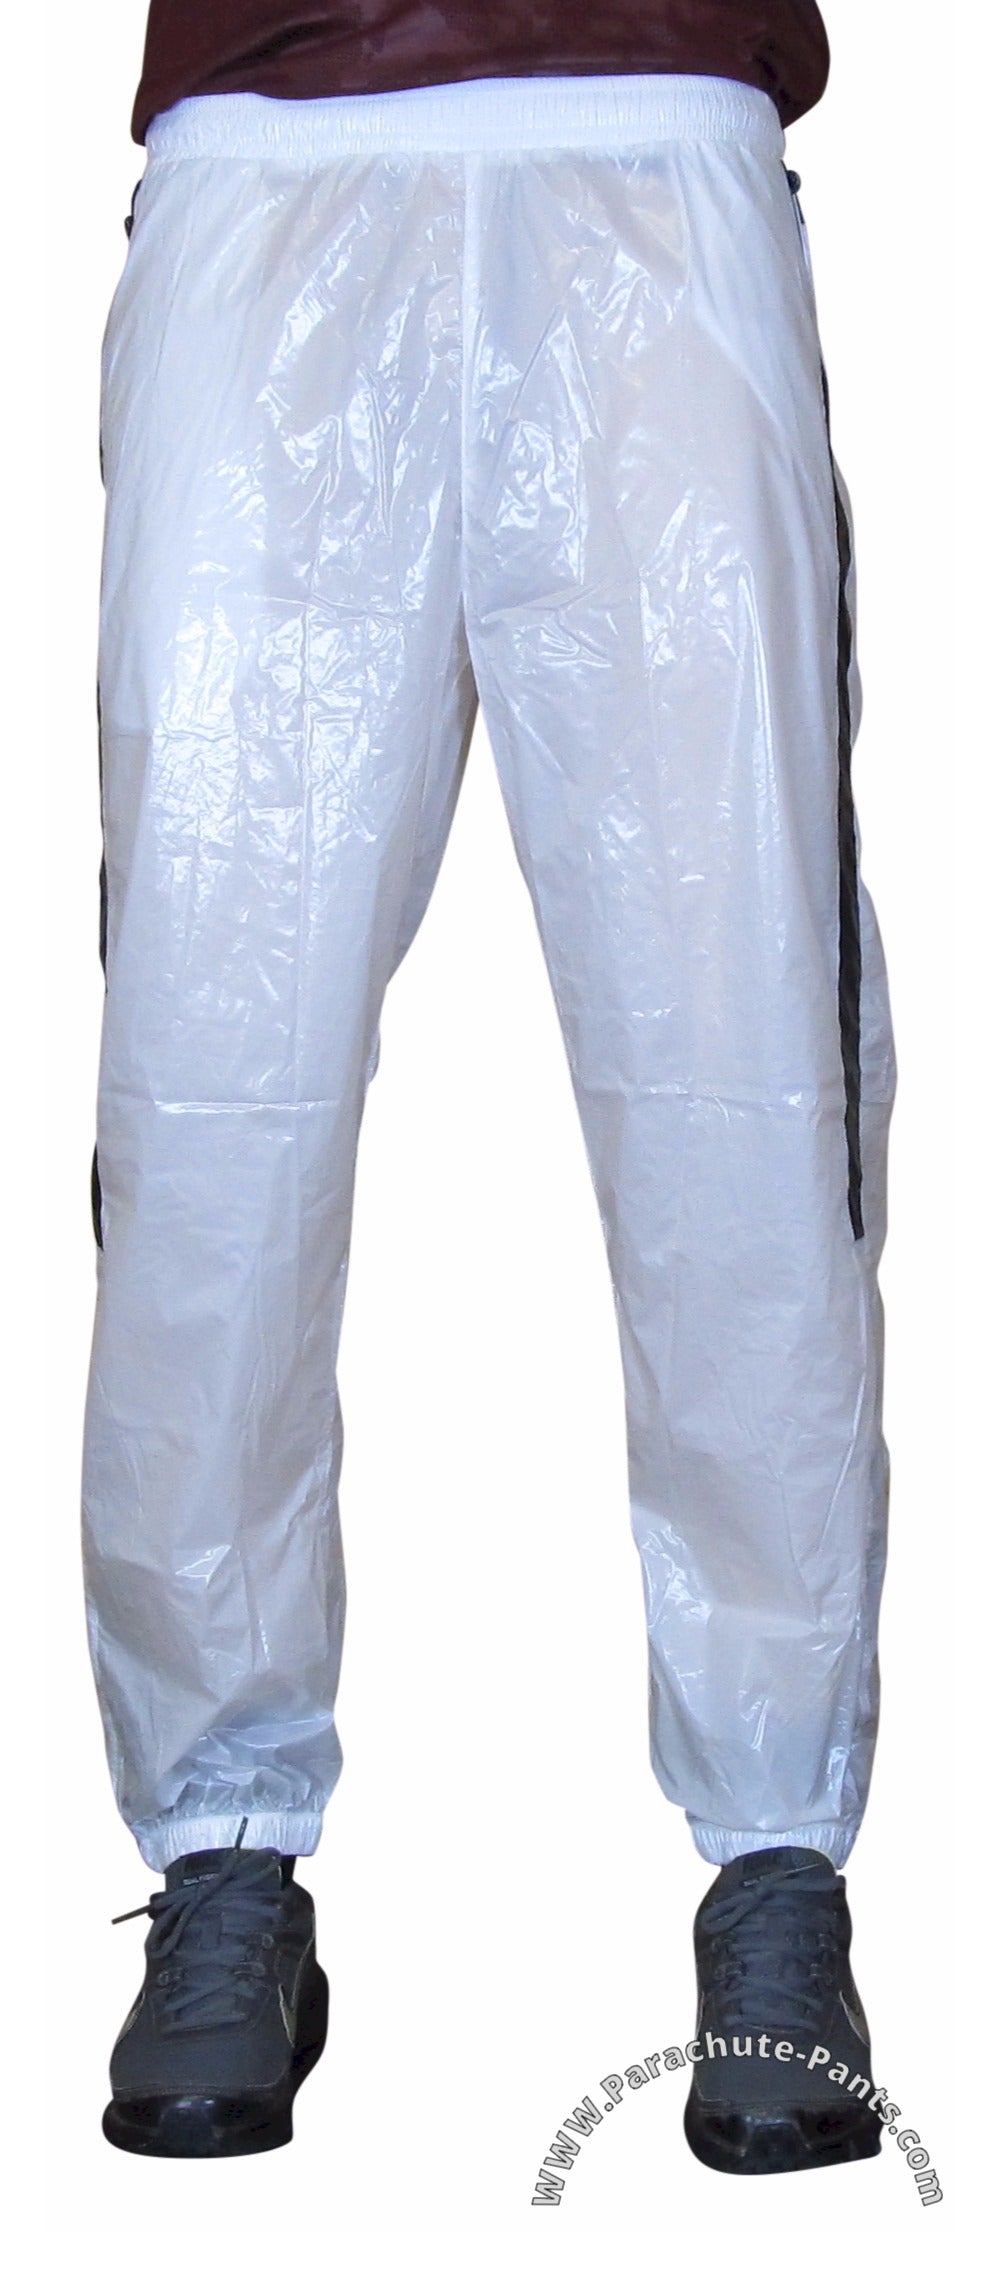 Bruno White Shiny Nylon/Plastic Wind Pants | The Parachute Pants Store